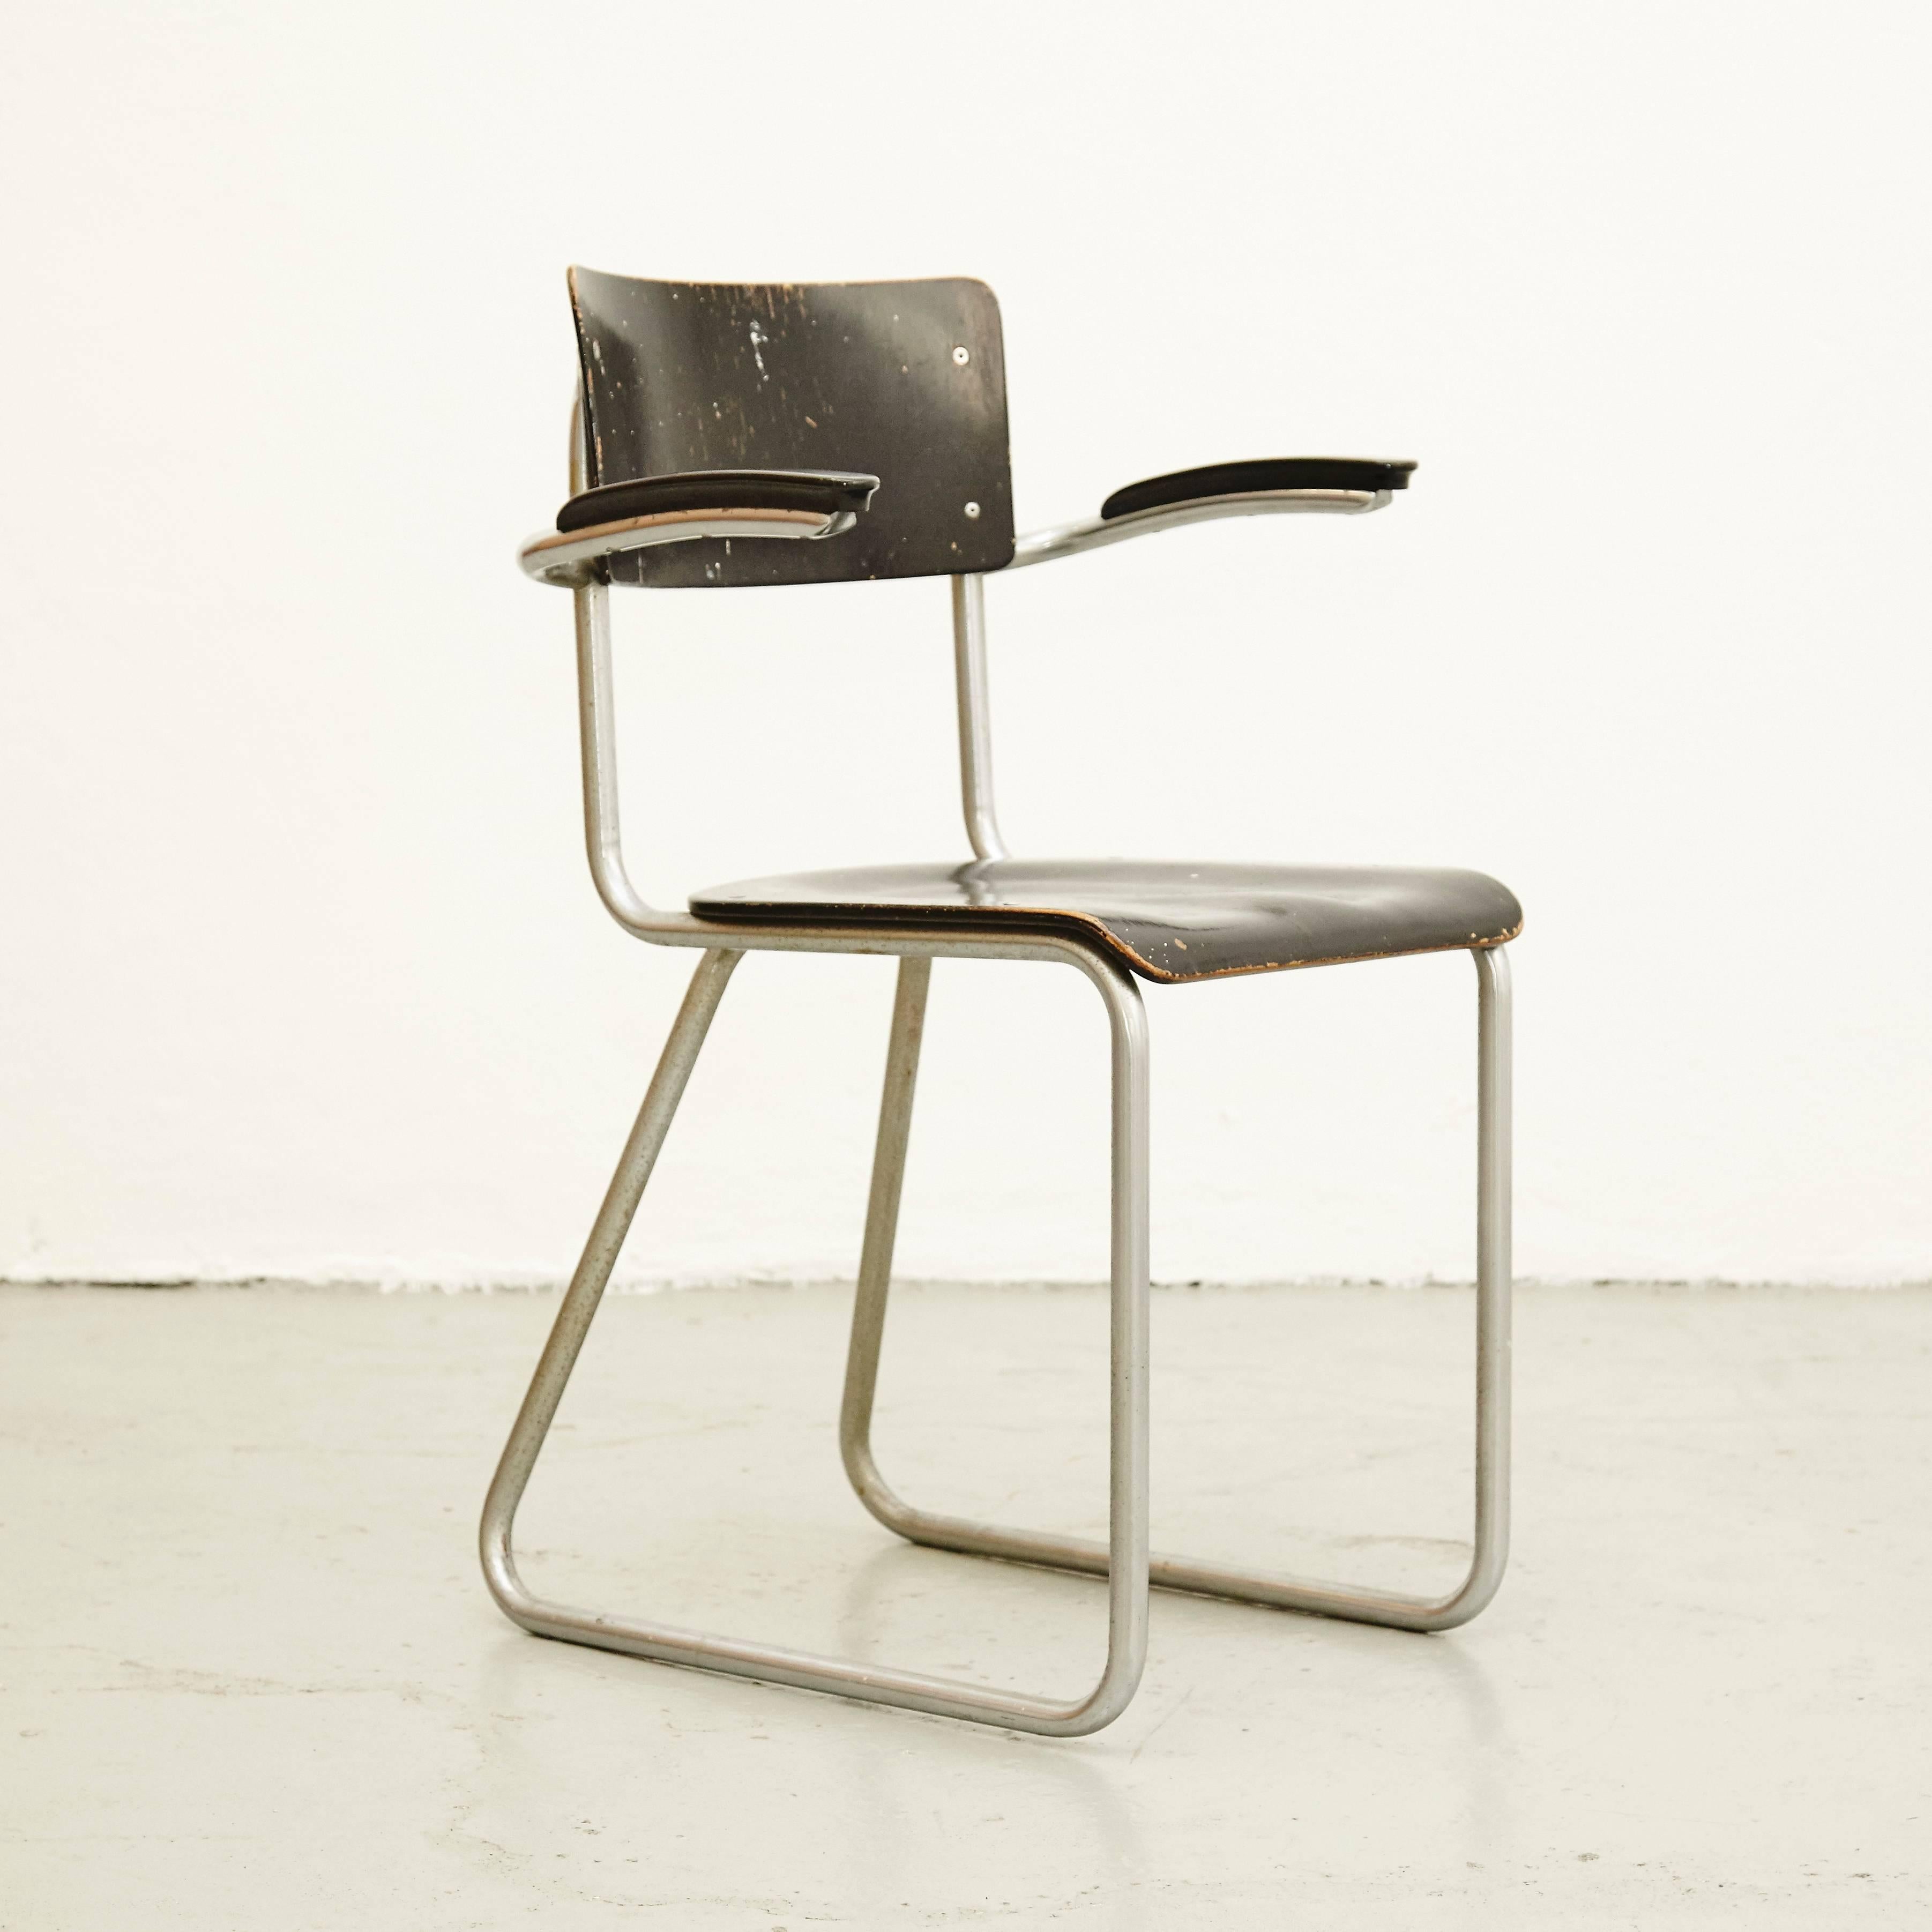 Dutch Bauhaus Chair, circa 1930